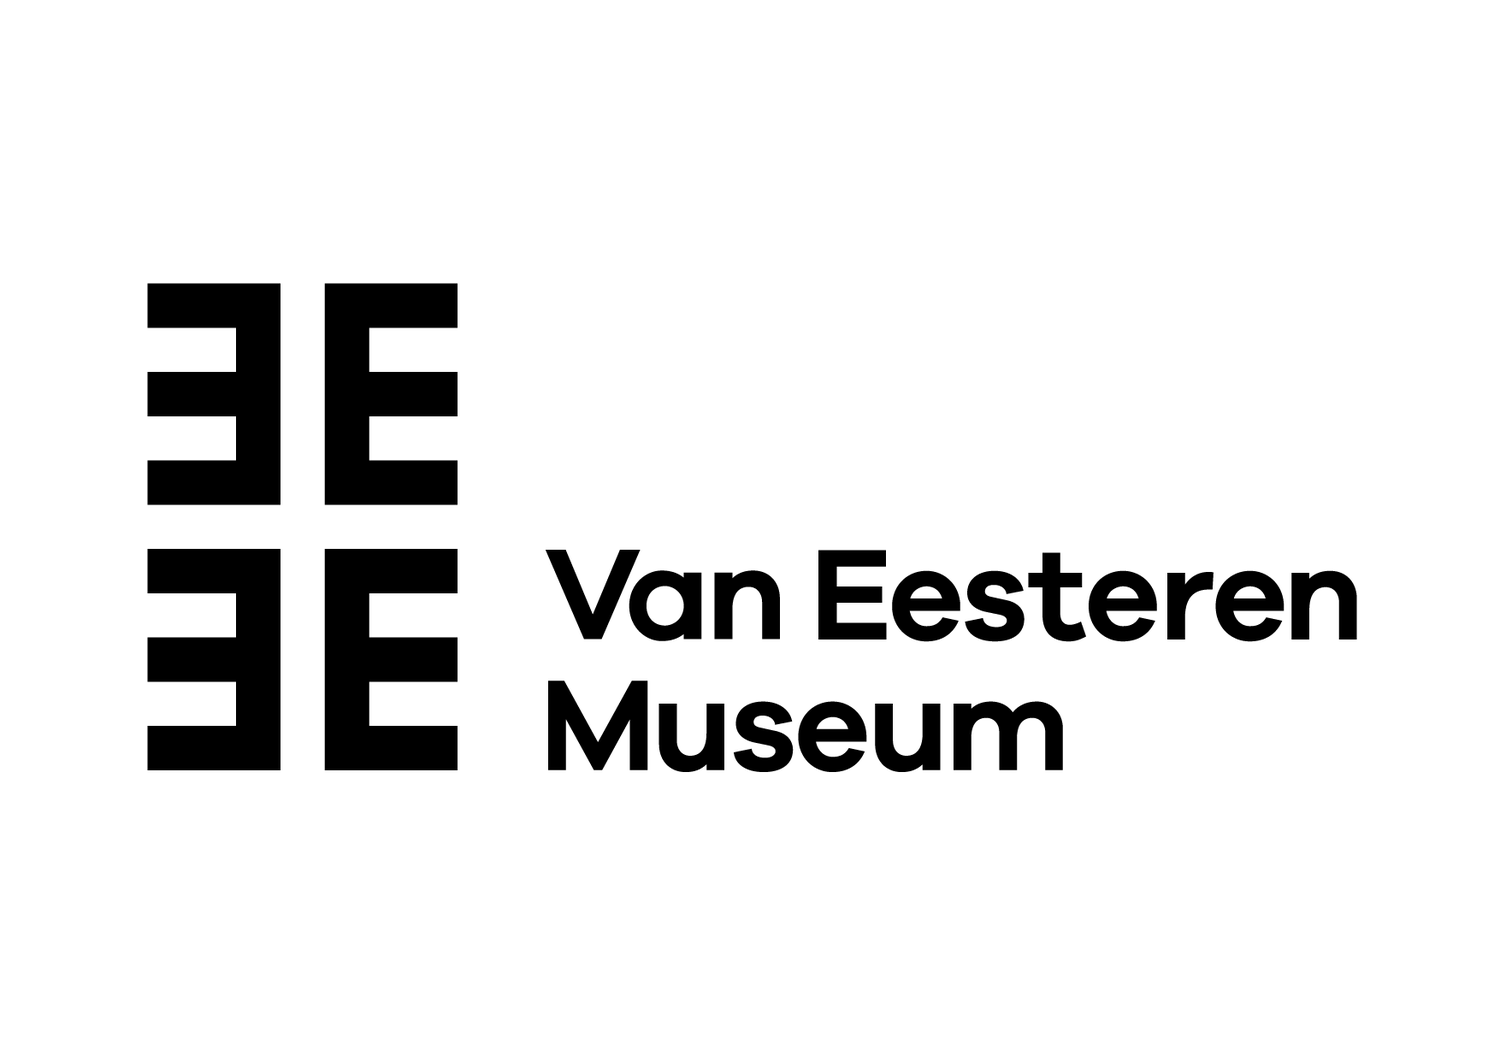 Van Eesteren Museum